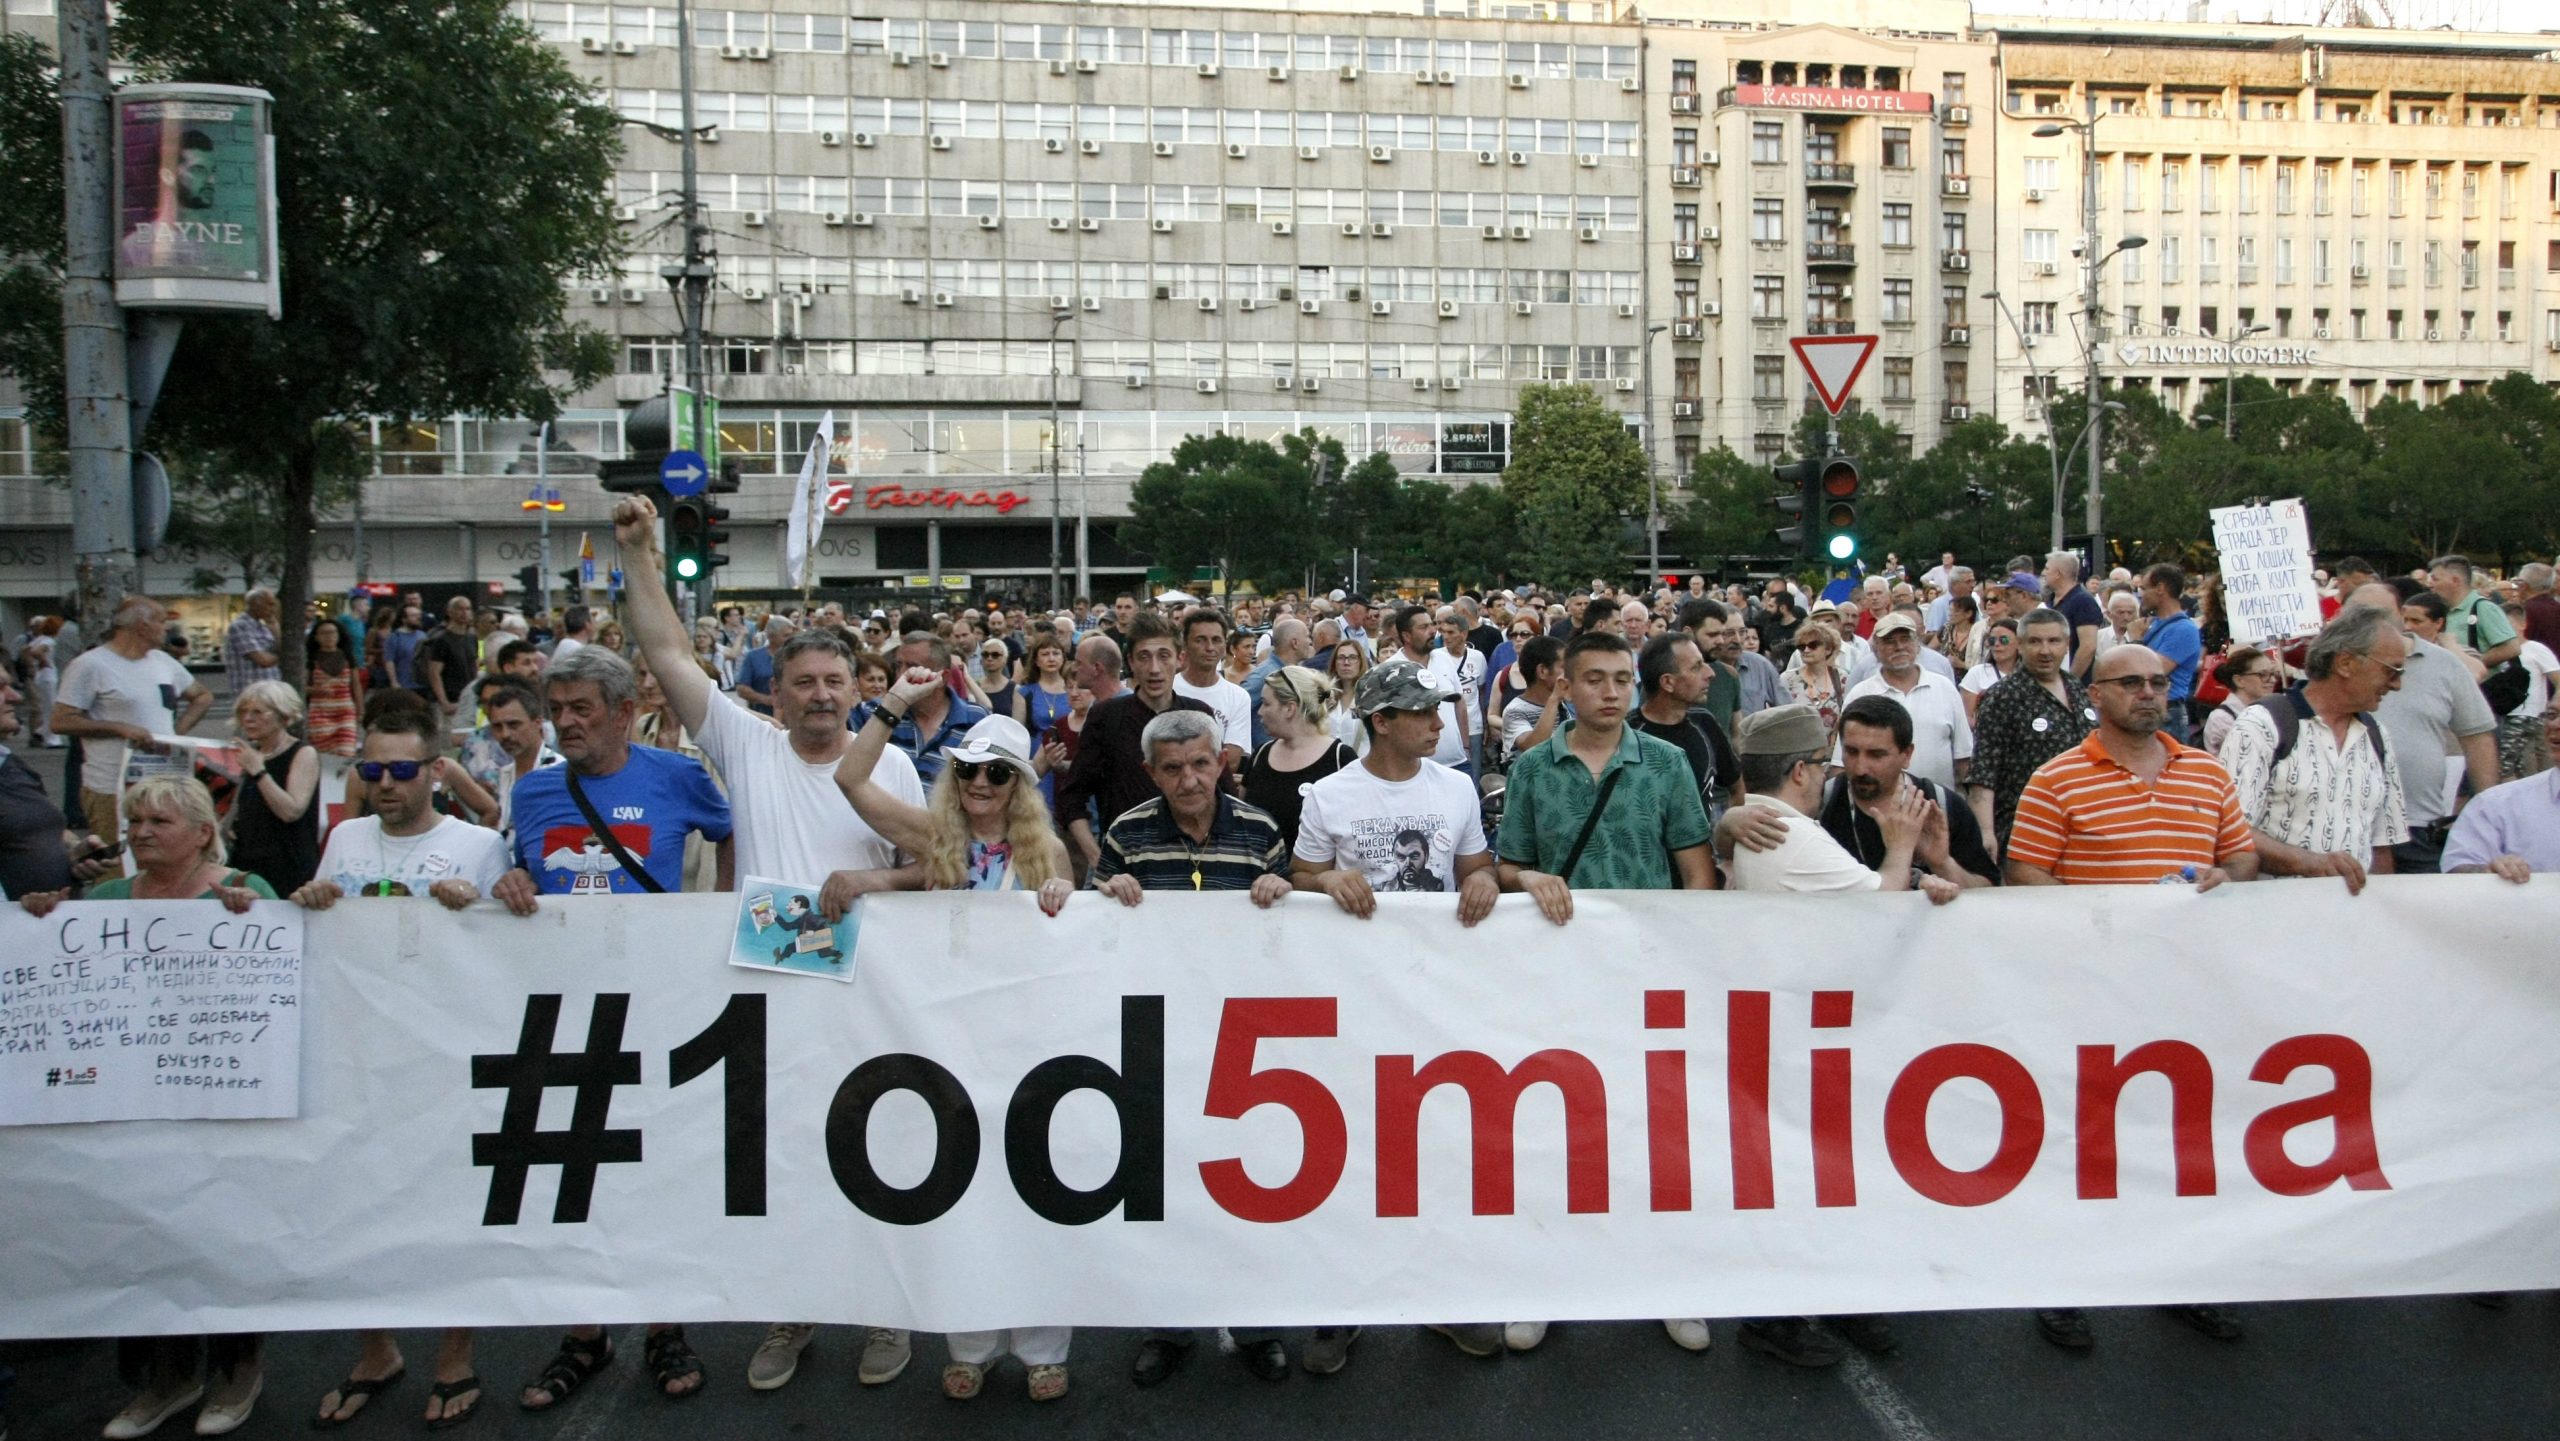 Beogradski protest "1 od 5 miliona" u subotu biće posvećen problemima u obrazovanju 1